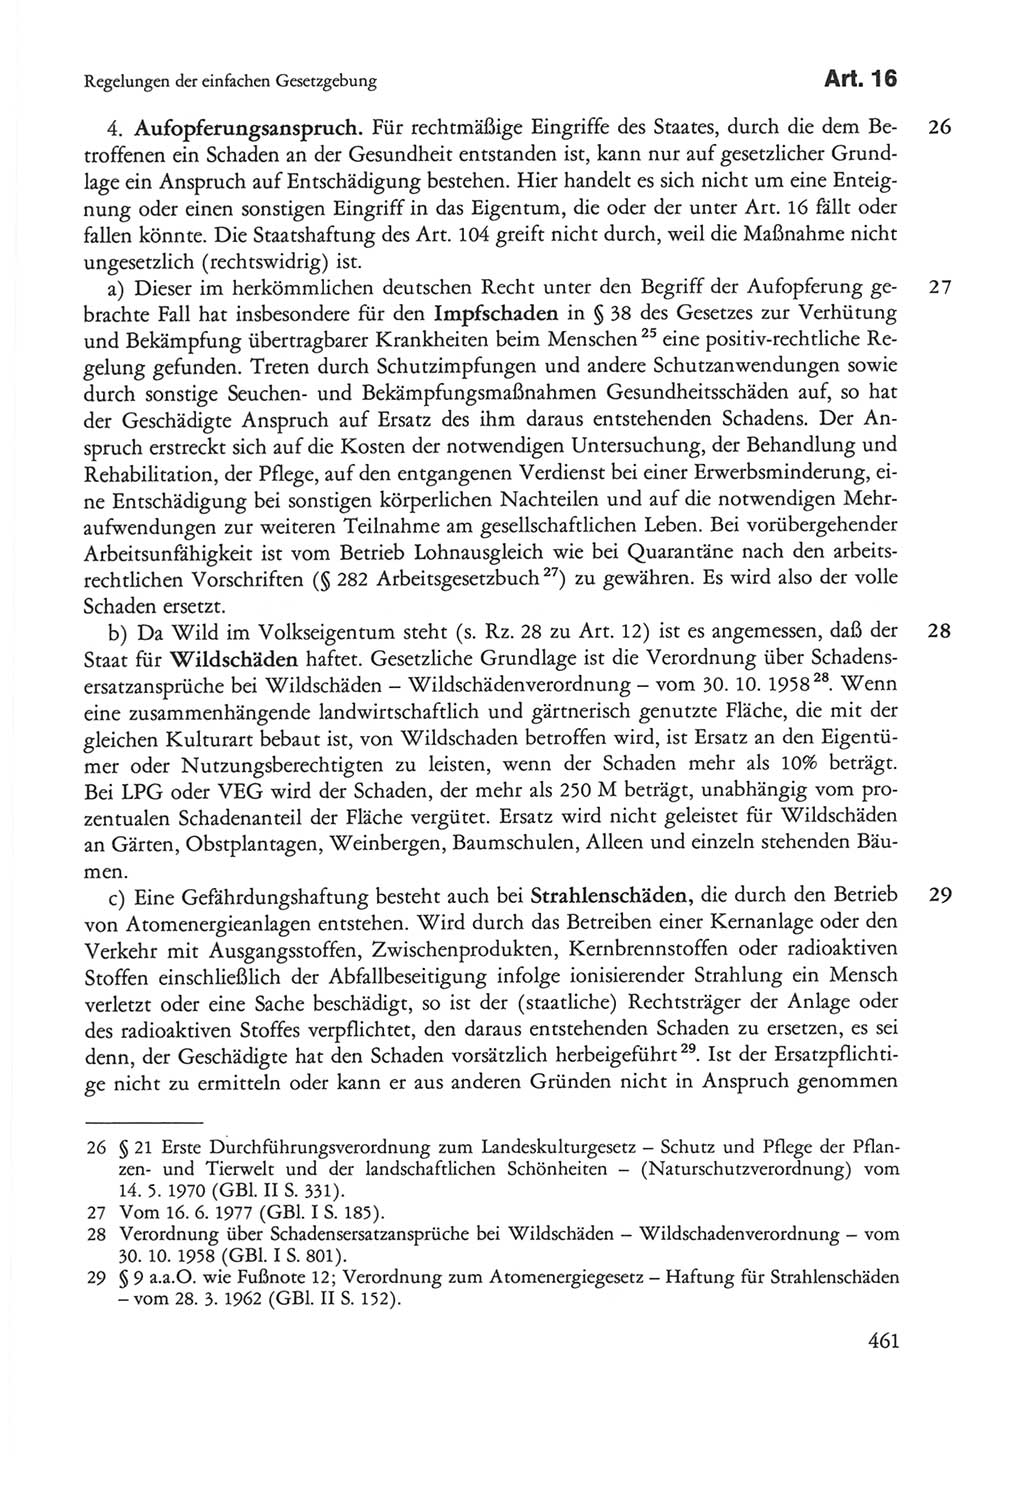 Die sozialistische Verfassung der Deutschen Demokratischen Republik (DDR), Kommentar 1982, Seite 461 (Soz. Verf. DDR Komm. 1982, S. 461)